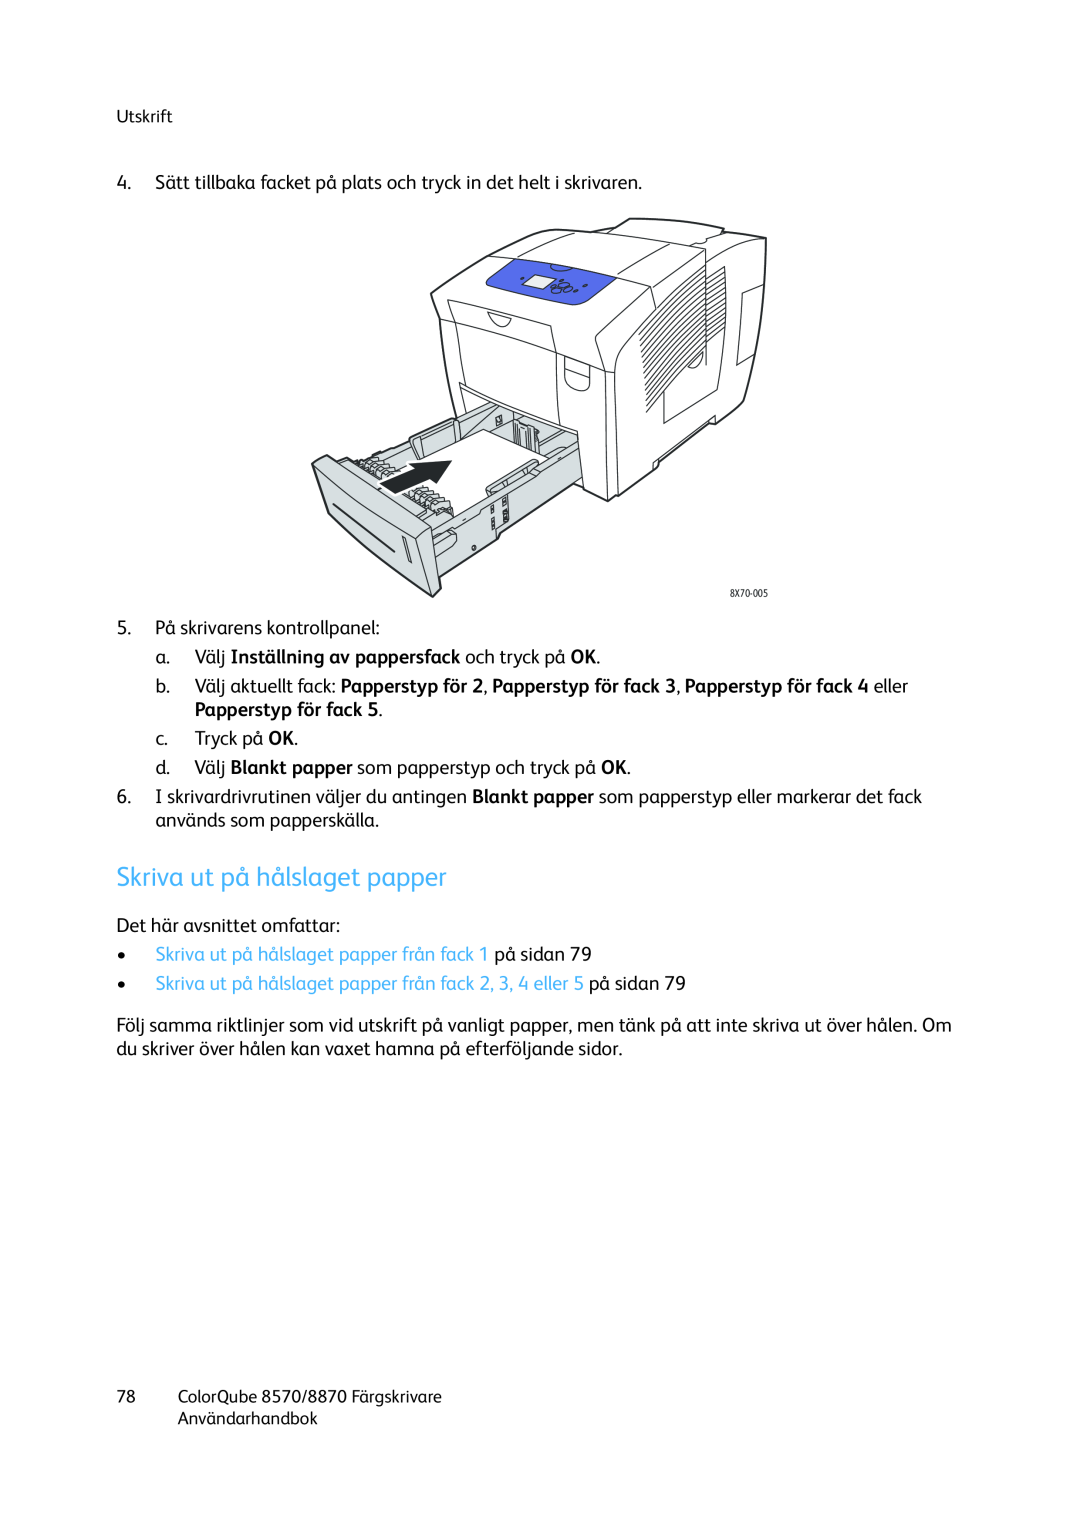 Xerox 8570 / 8870 manual Skriva ut på hålslaget papper, a.Välj Inställning av pappersfack och tryck på OK 